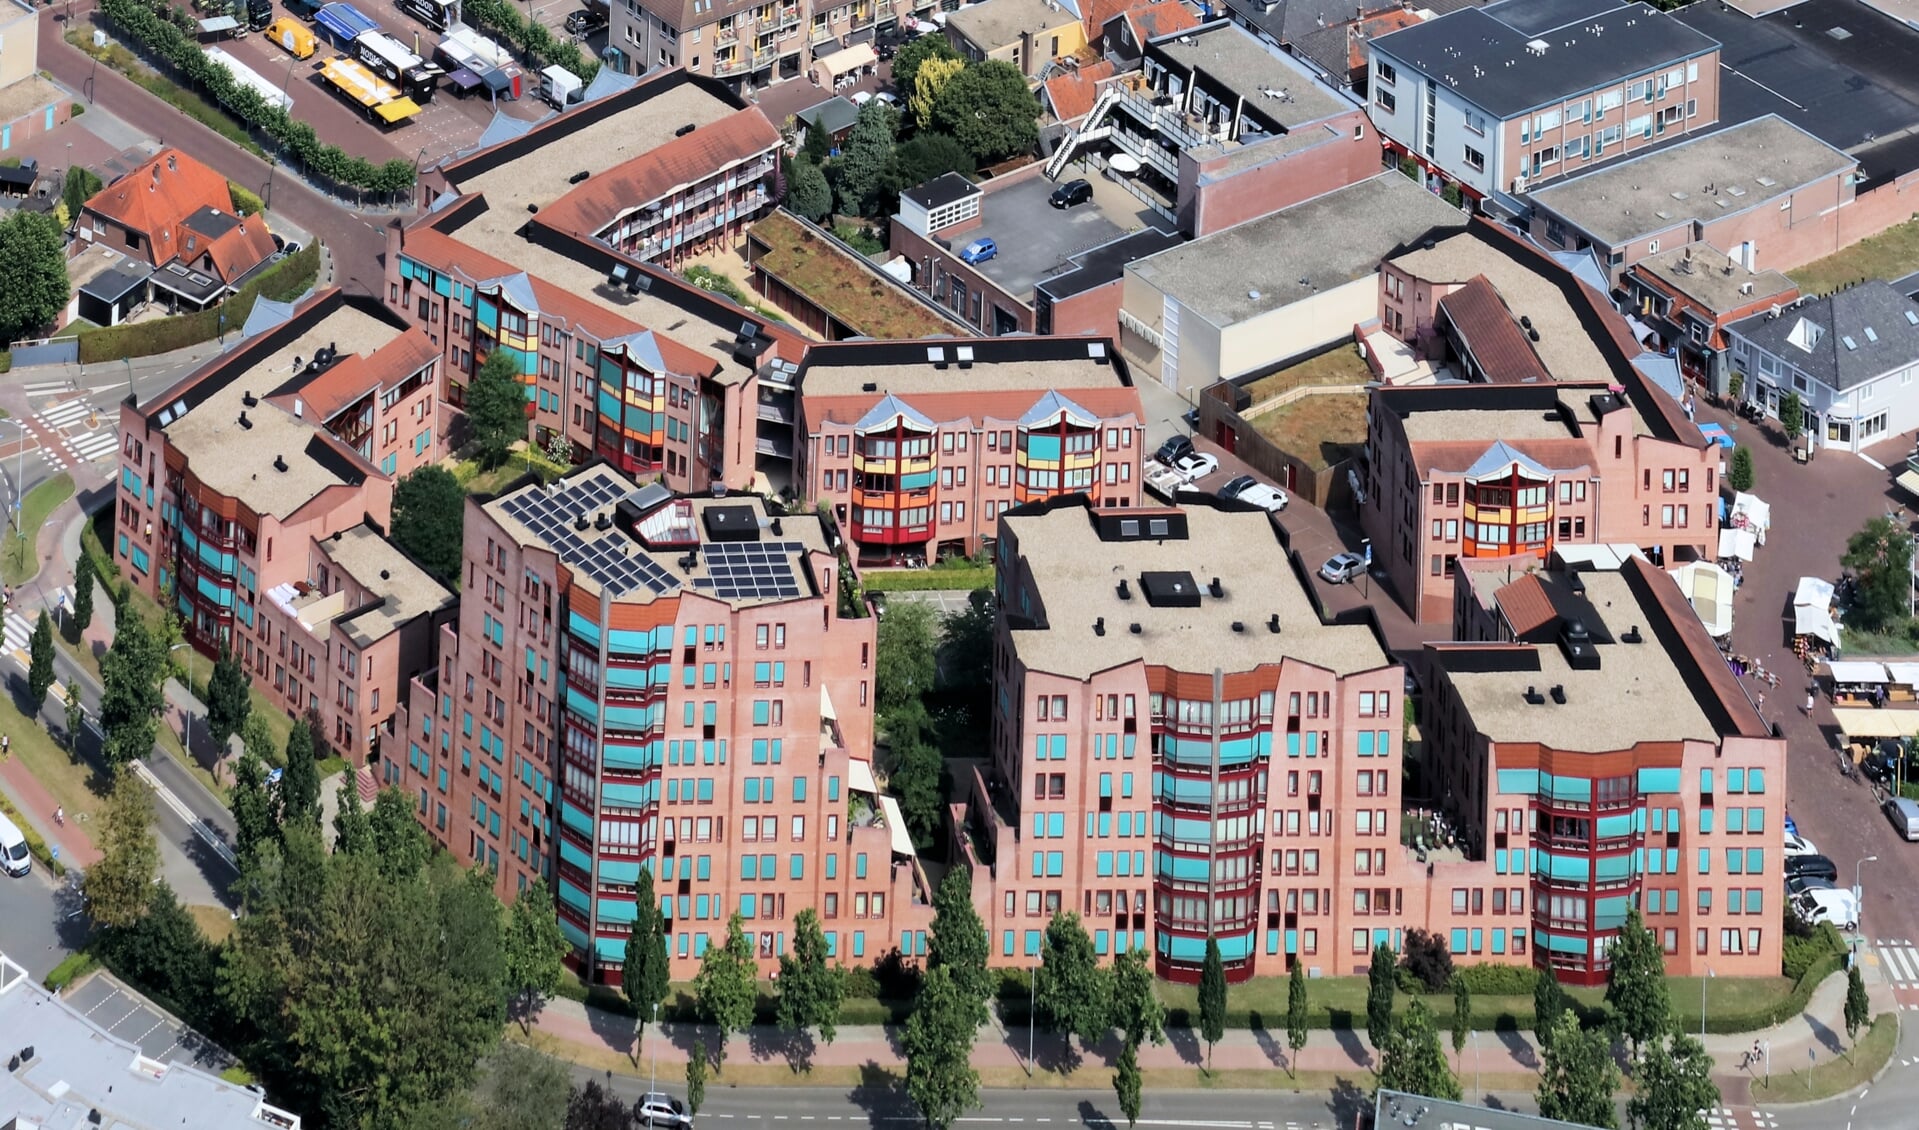 De Bijeberg in Barneveld wordt vaak genoemd als voorbeeld voor hoogbouw. De kans is groot dat de komende jaren op meer plekken gebouwen met meerdere verdiepingen gerealiseerd worden.